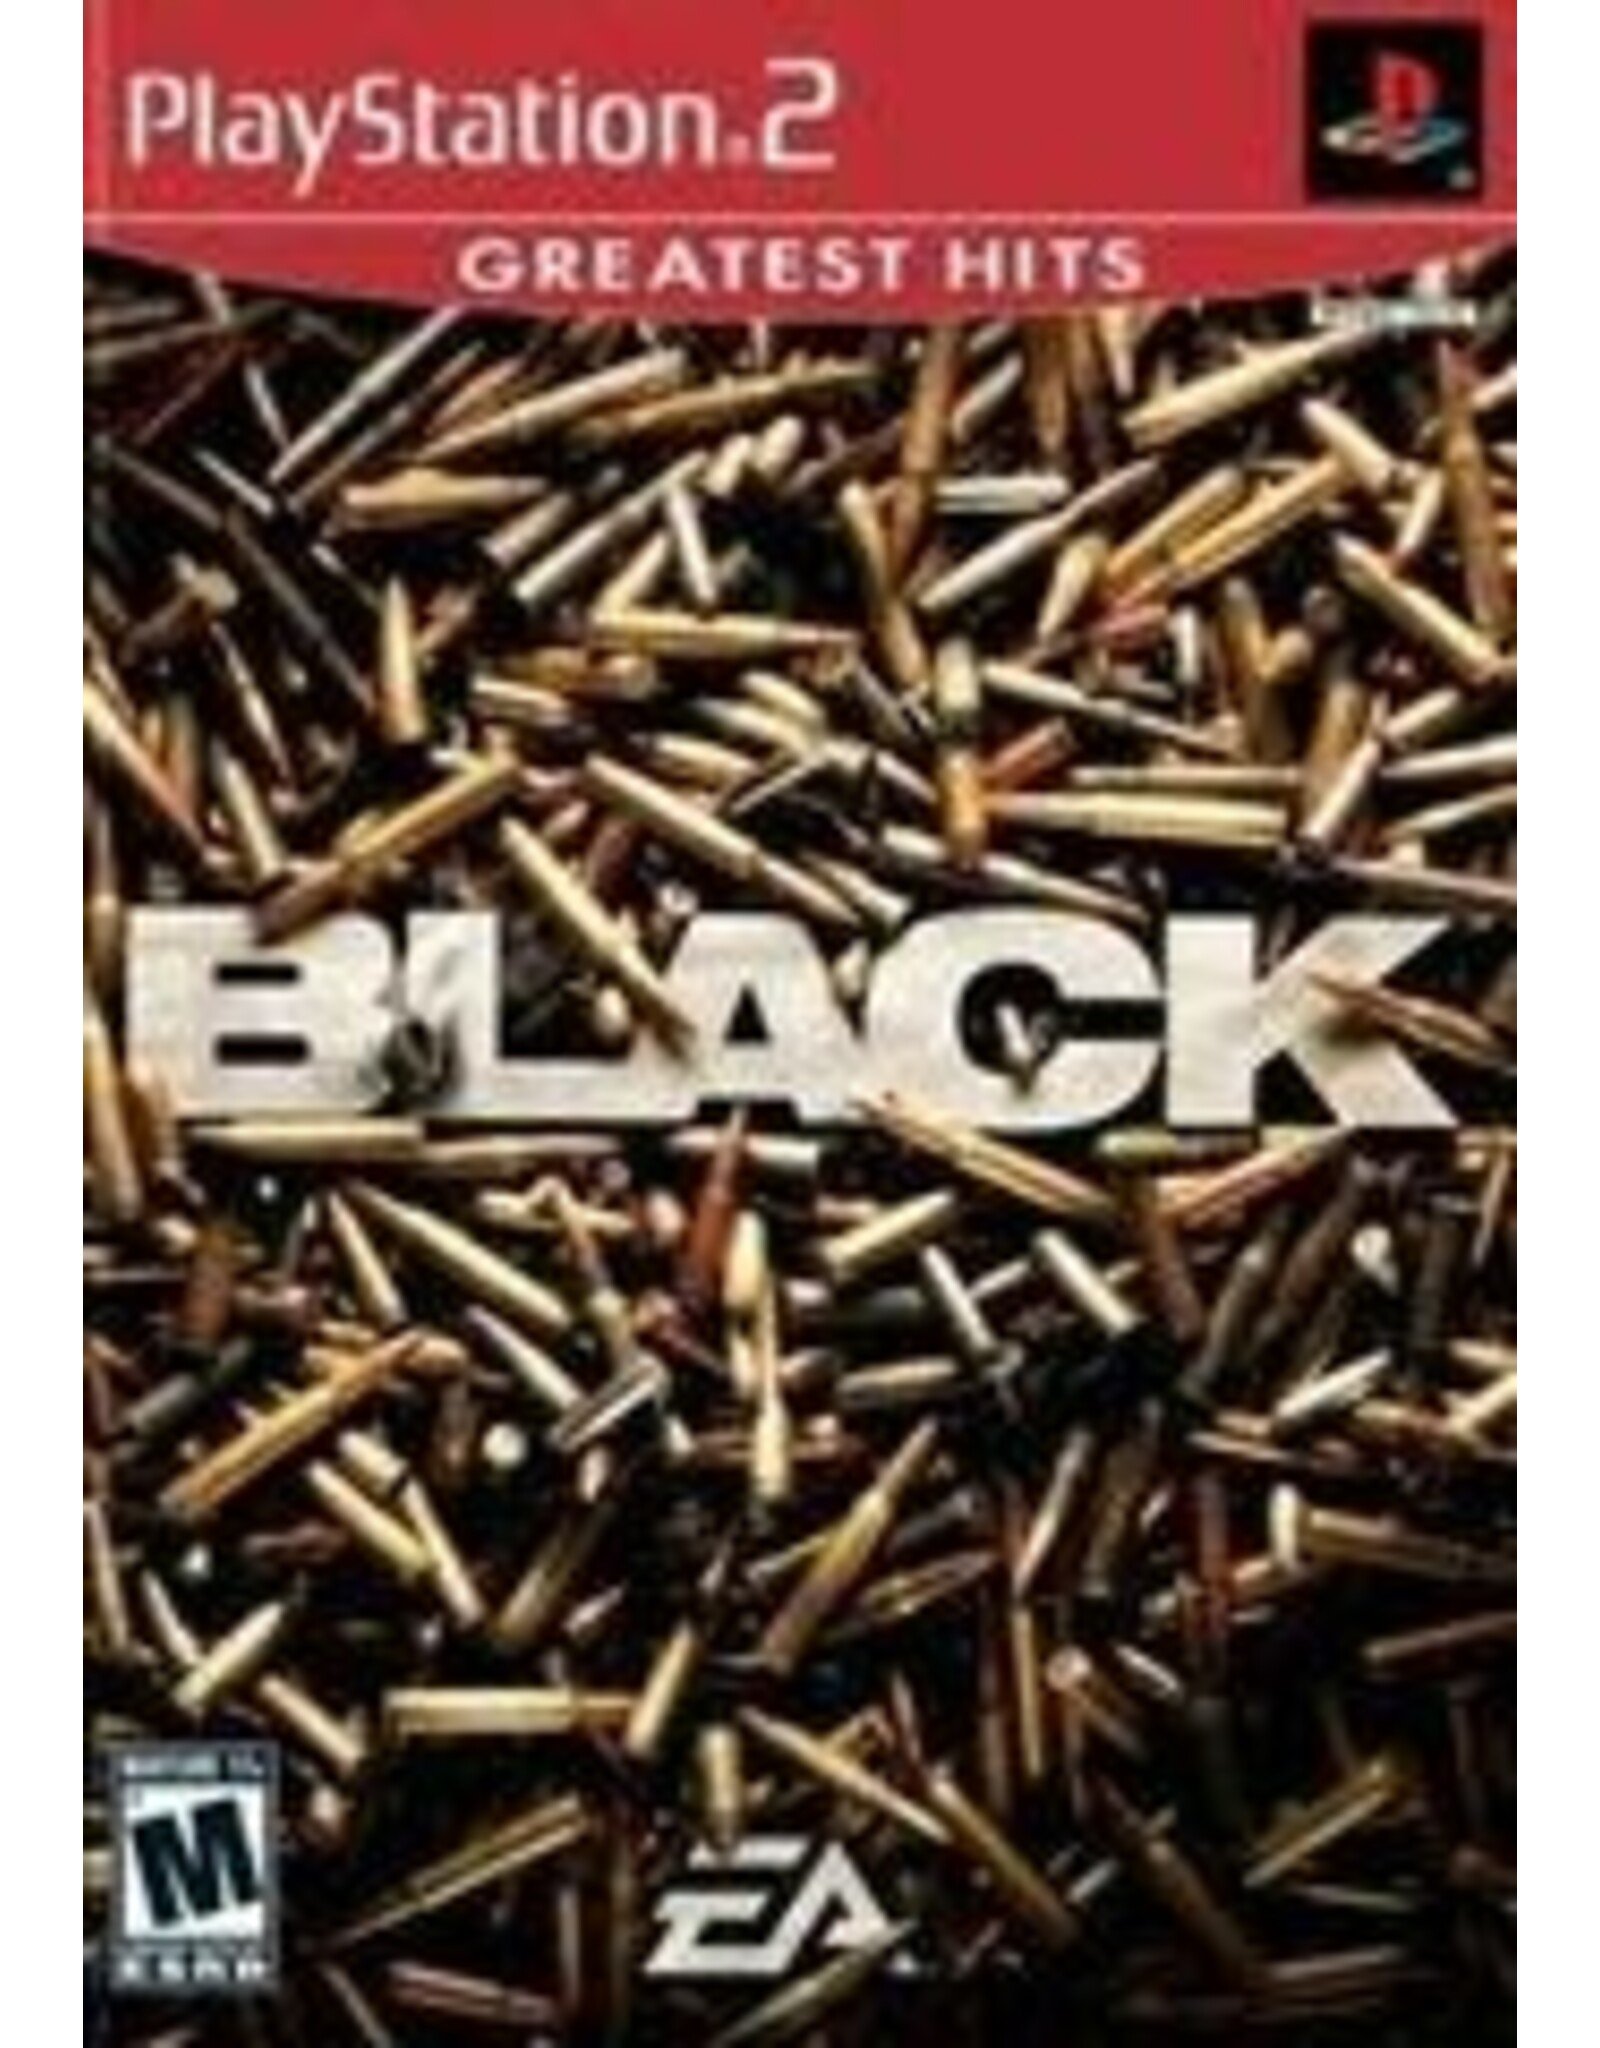 Playstation 2 Black (Greatest Hits, No Manual)